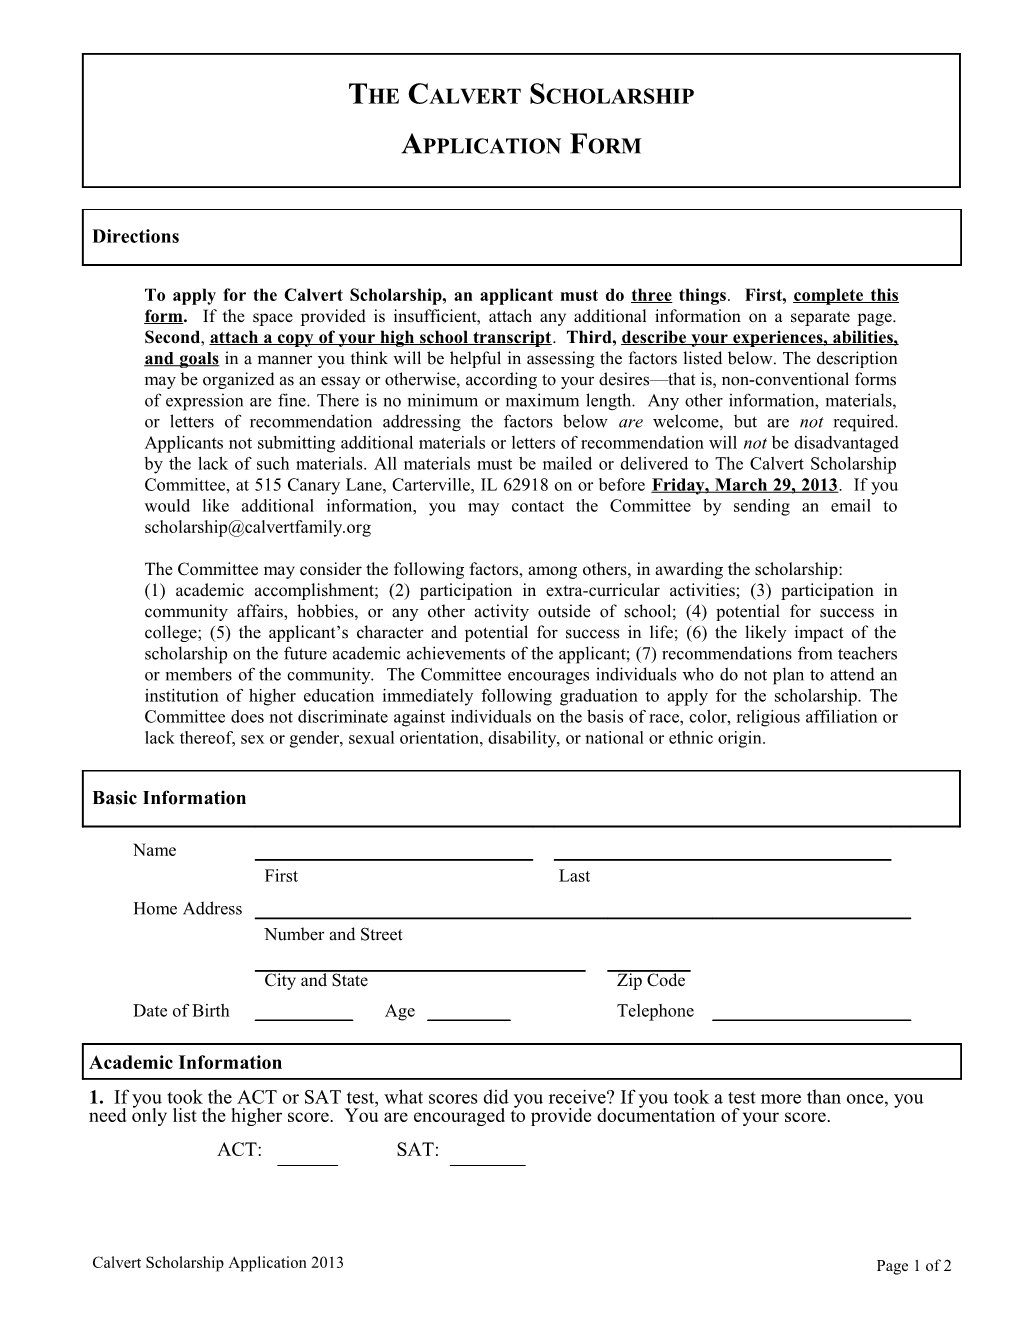 Calvert Scholarship - Application Form - 2008 (T: Wcalvert S2647120;1)